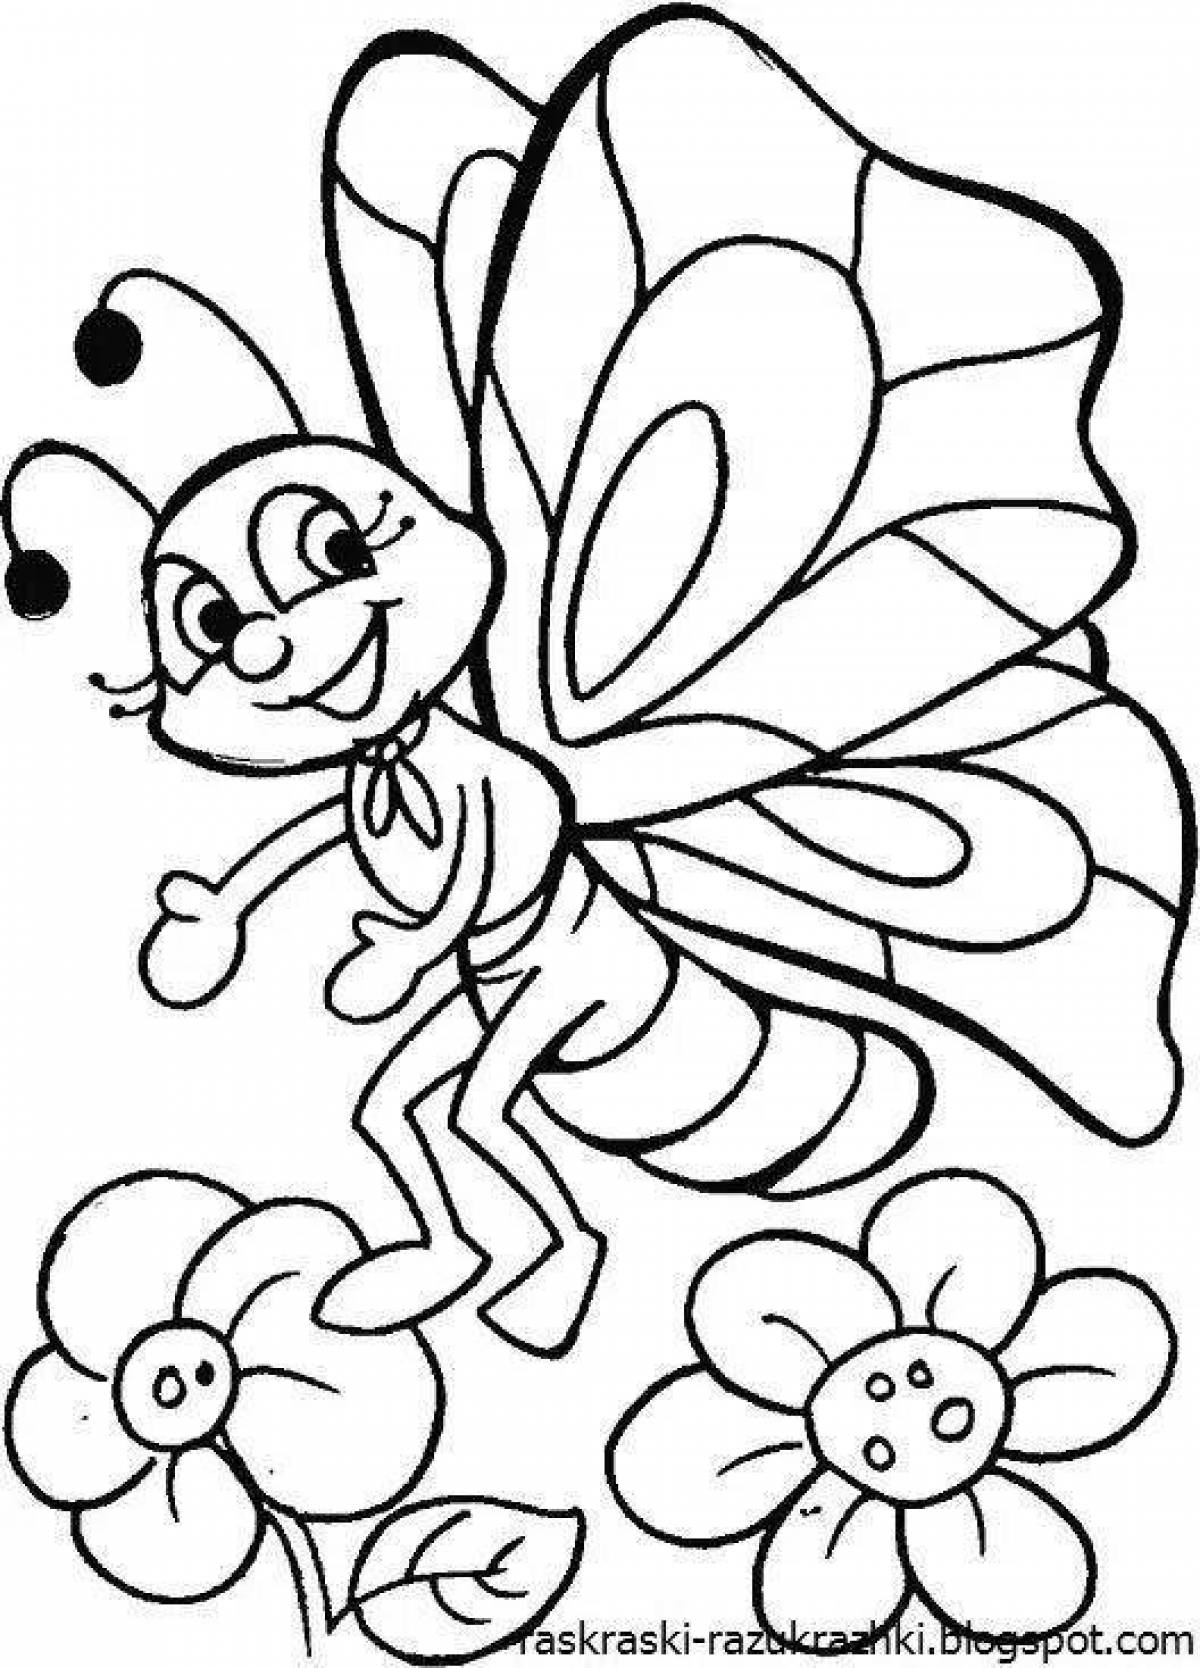 Раскраска насекомые для детей 7 лет. Бабочка раскраска для детей. Раскраски длядля детей. Раскраски насекомые для детей 4-5 лет. Раскраска насекомые для малышей.